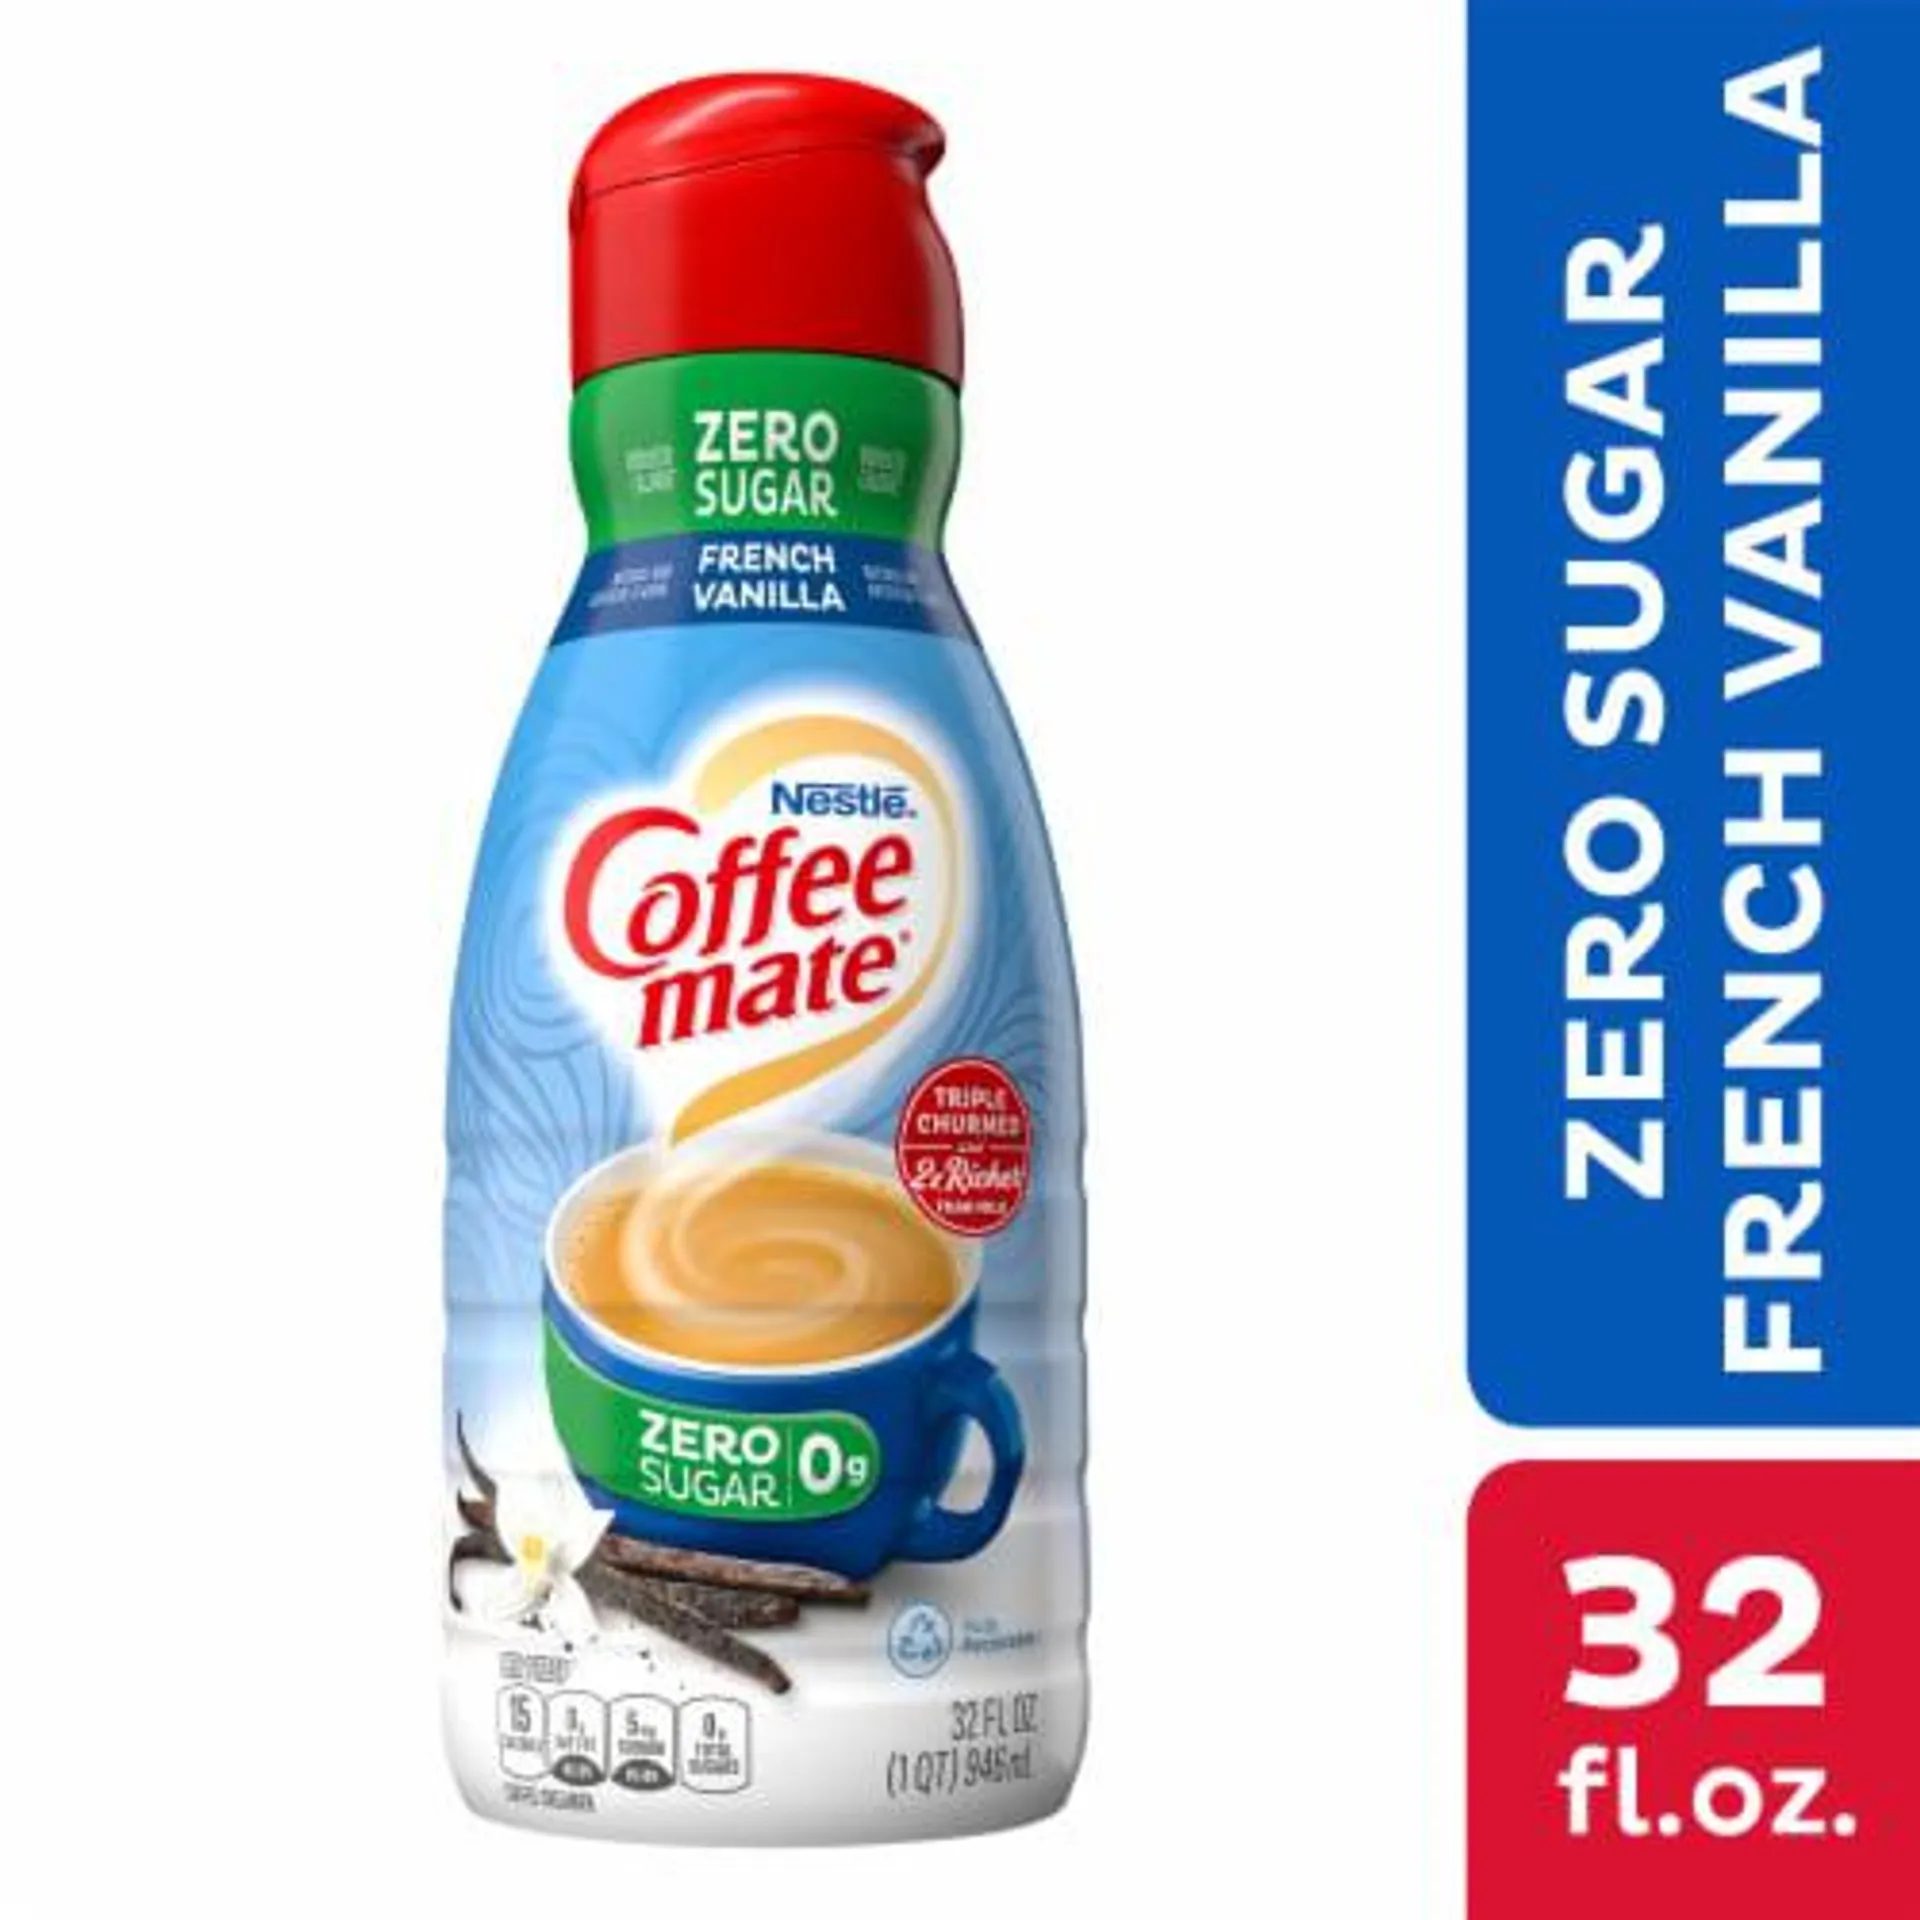 Nestle Coffee mate Zero Sugar French Vanilla Liquid Coffee Creamer